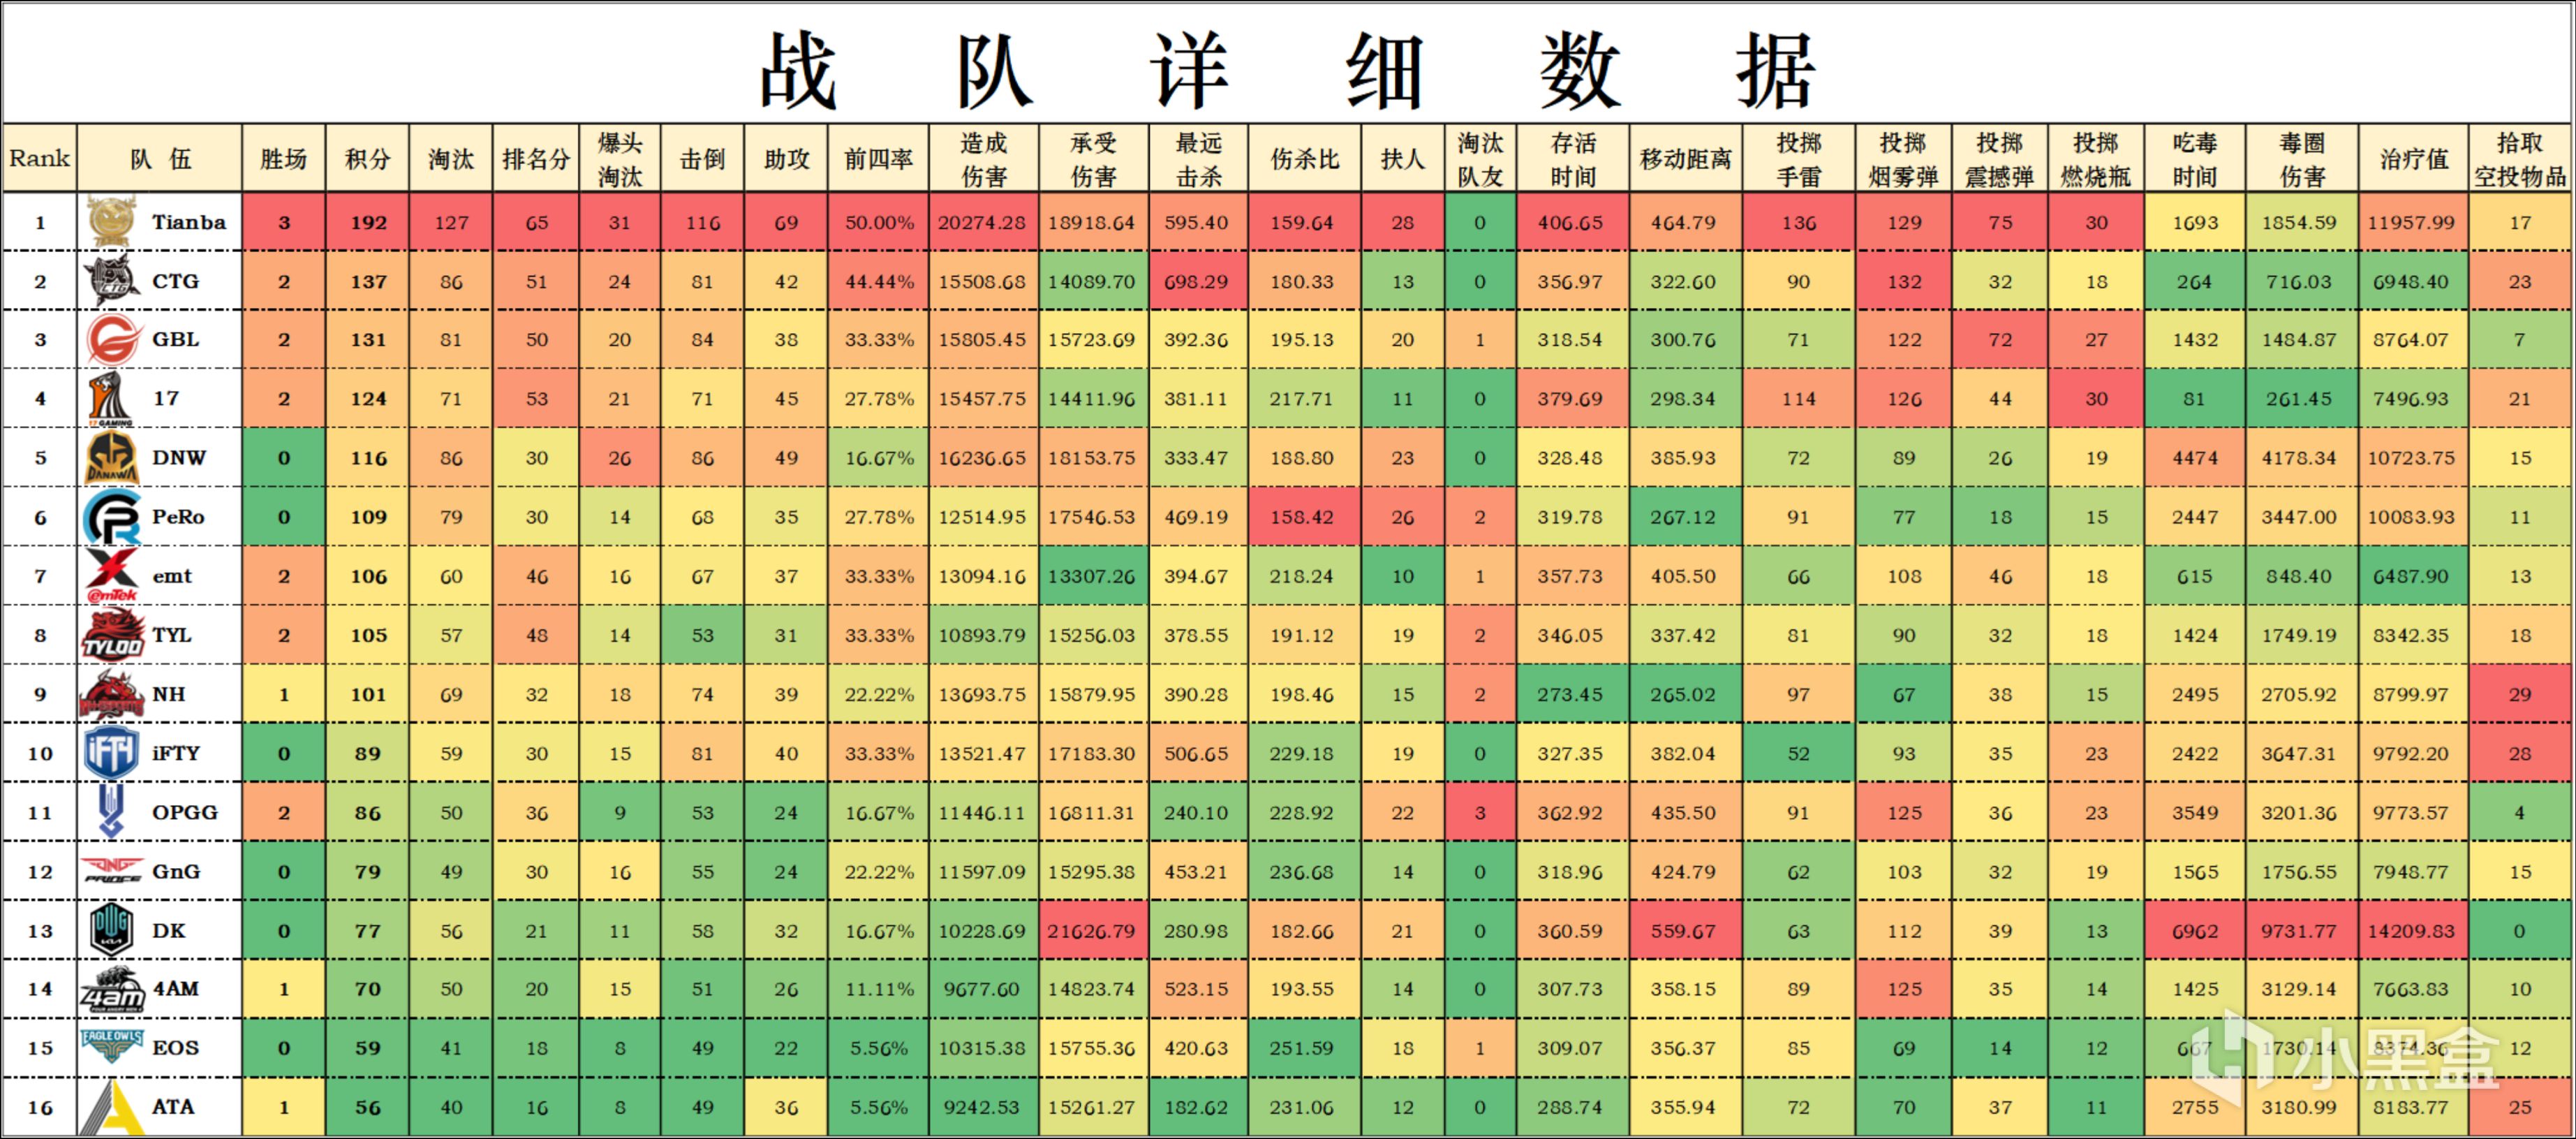 【数据流】亚洲训练赛W1,Tianba以192分夺得本周冠军,Cui71淘汰王41个淘汰-第4张